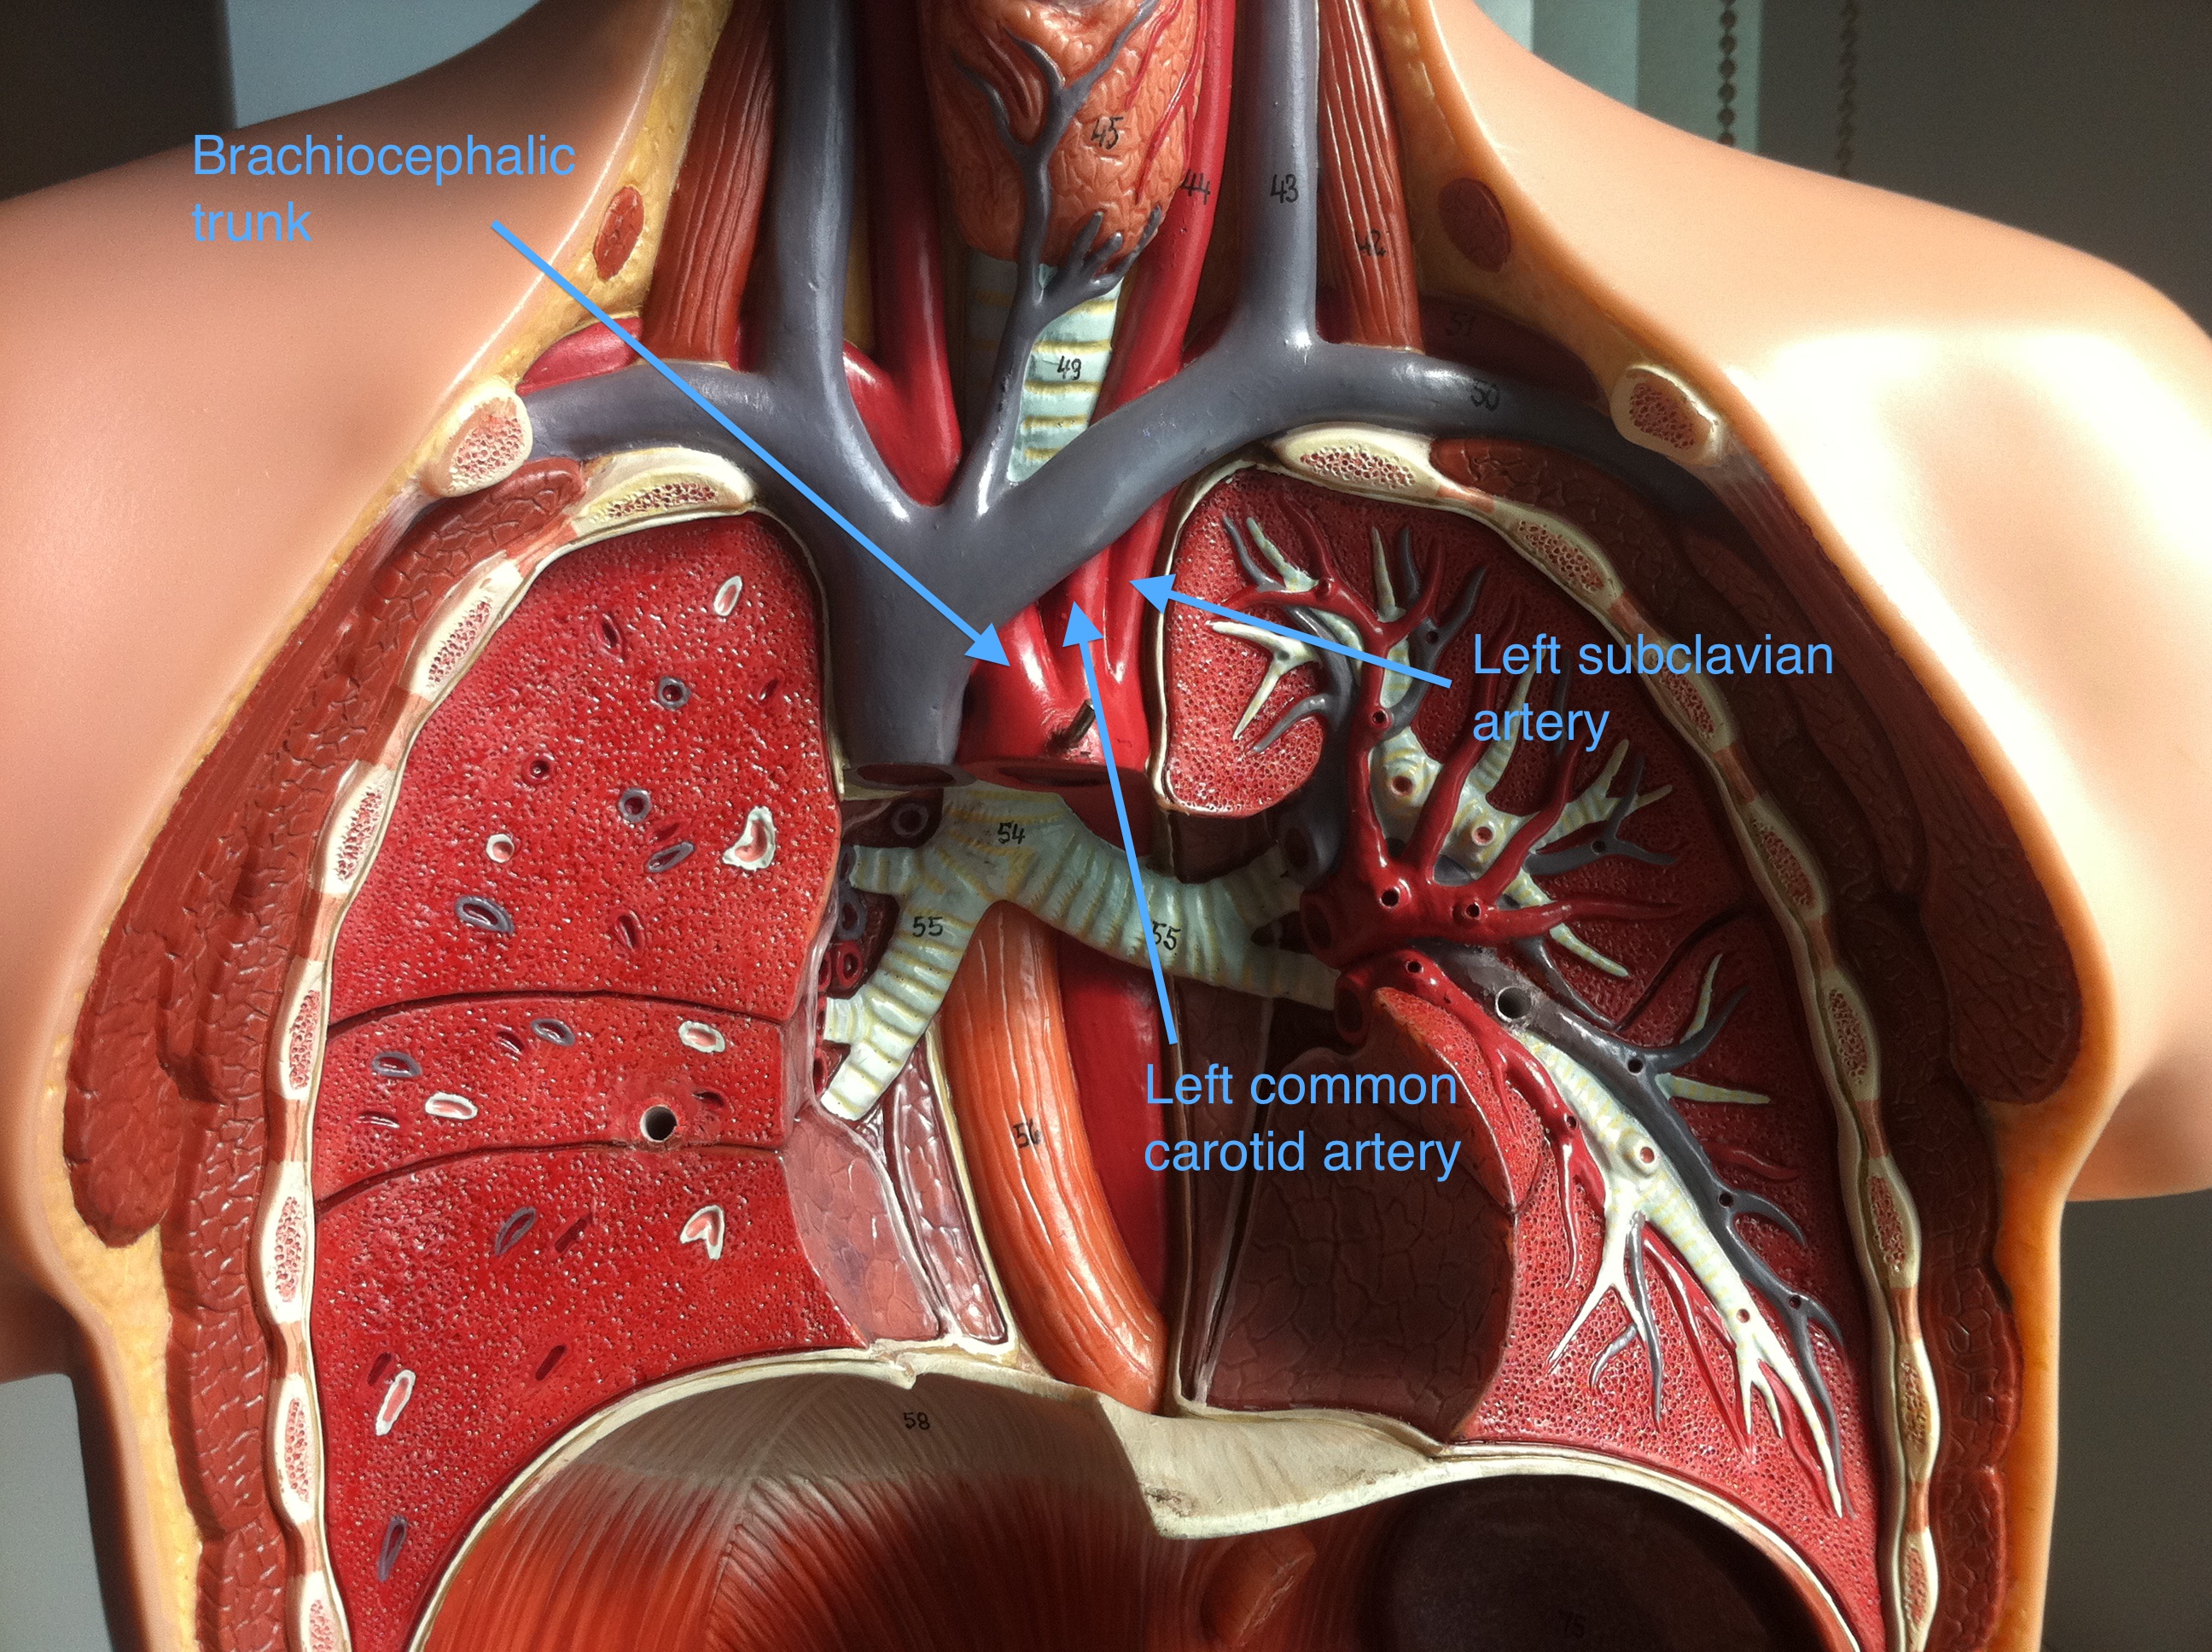 internal carotid artery model